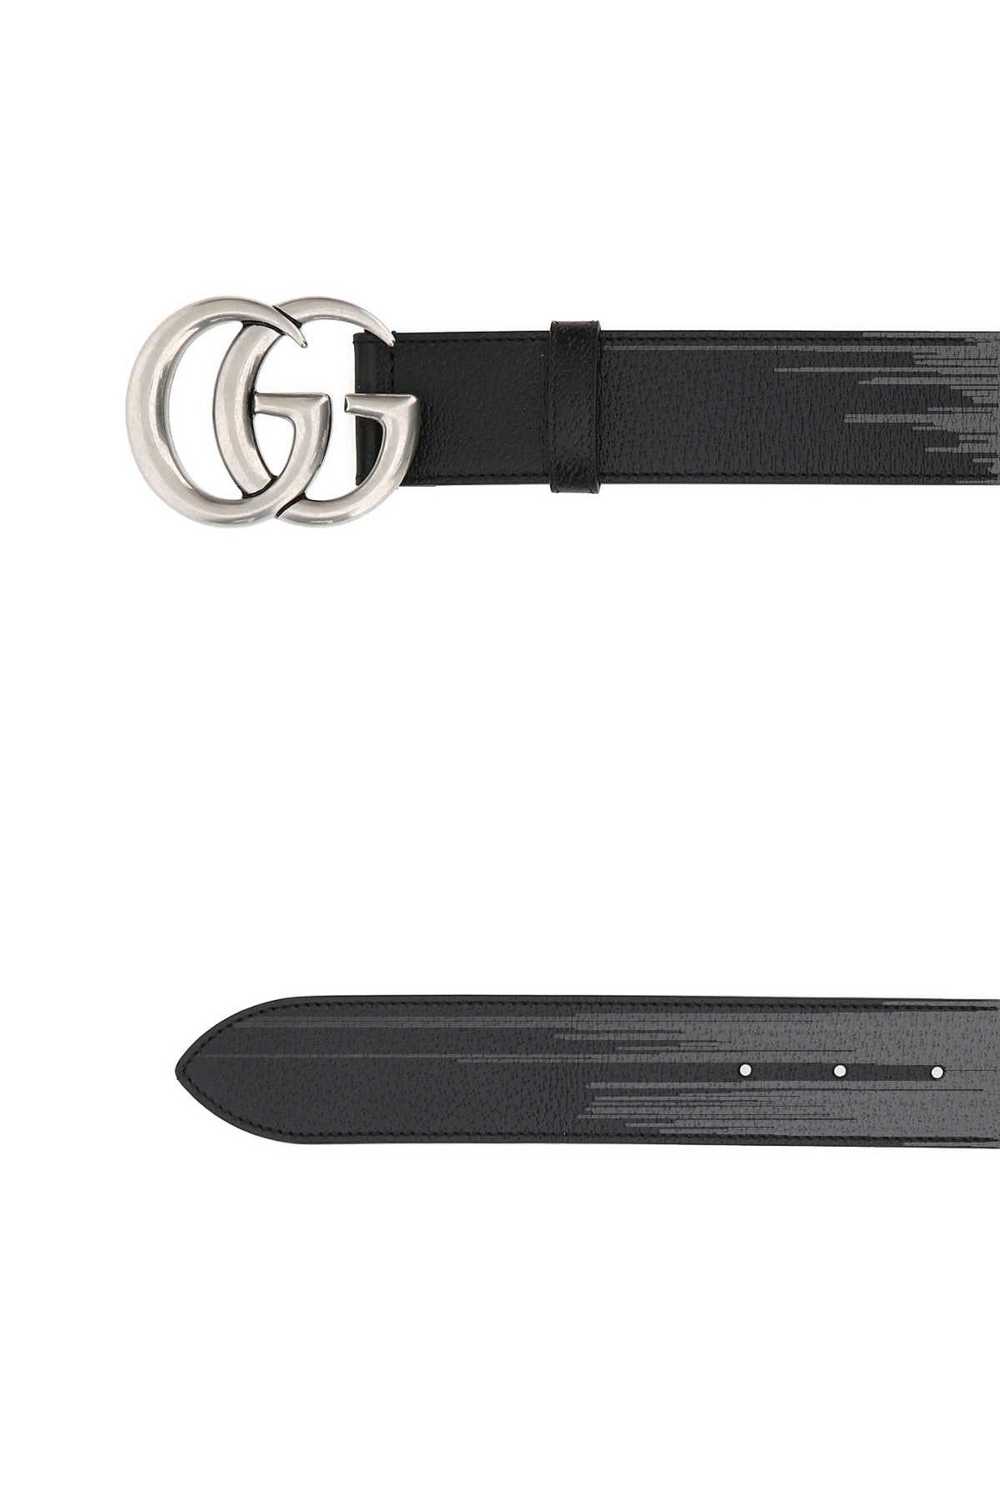 Gucci Black Leather Belt - image 1